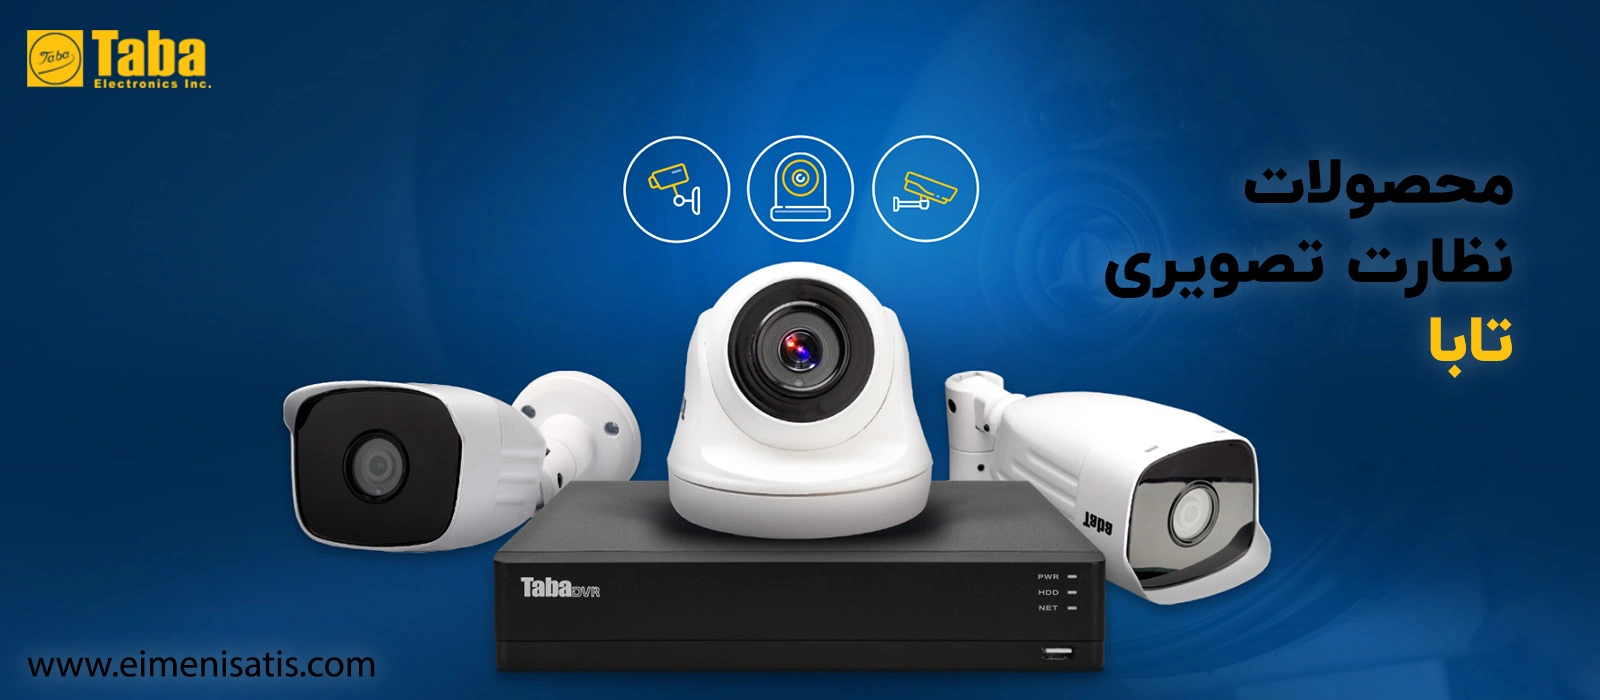 محصولات نظارت تصویری تابا